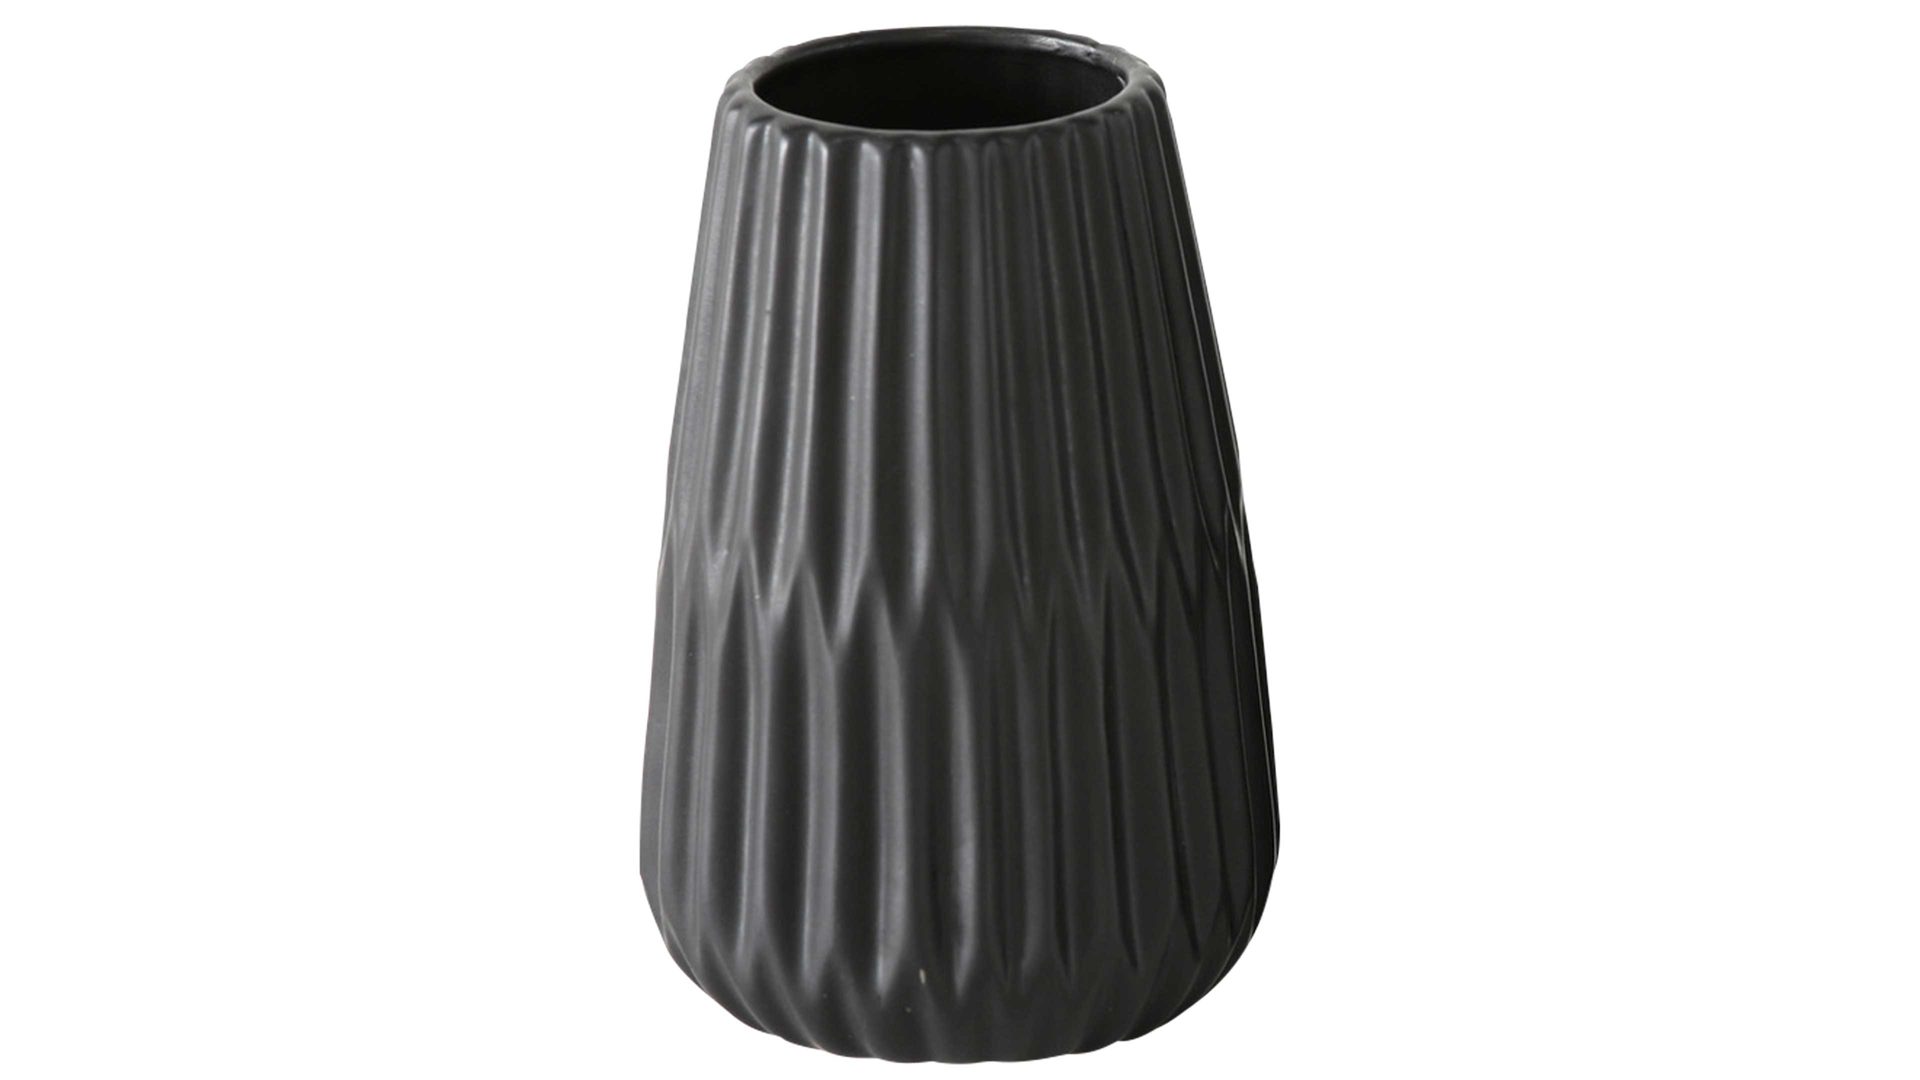 Vase Interliving BEST BUDDYS! aus Keramik in Schwarz Interliving BEST BUDDYS! Vase Esko mattschwarzes Porzellan - Durchmesser ca. 8 cm